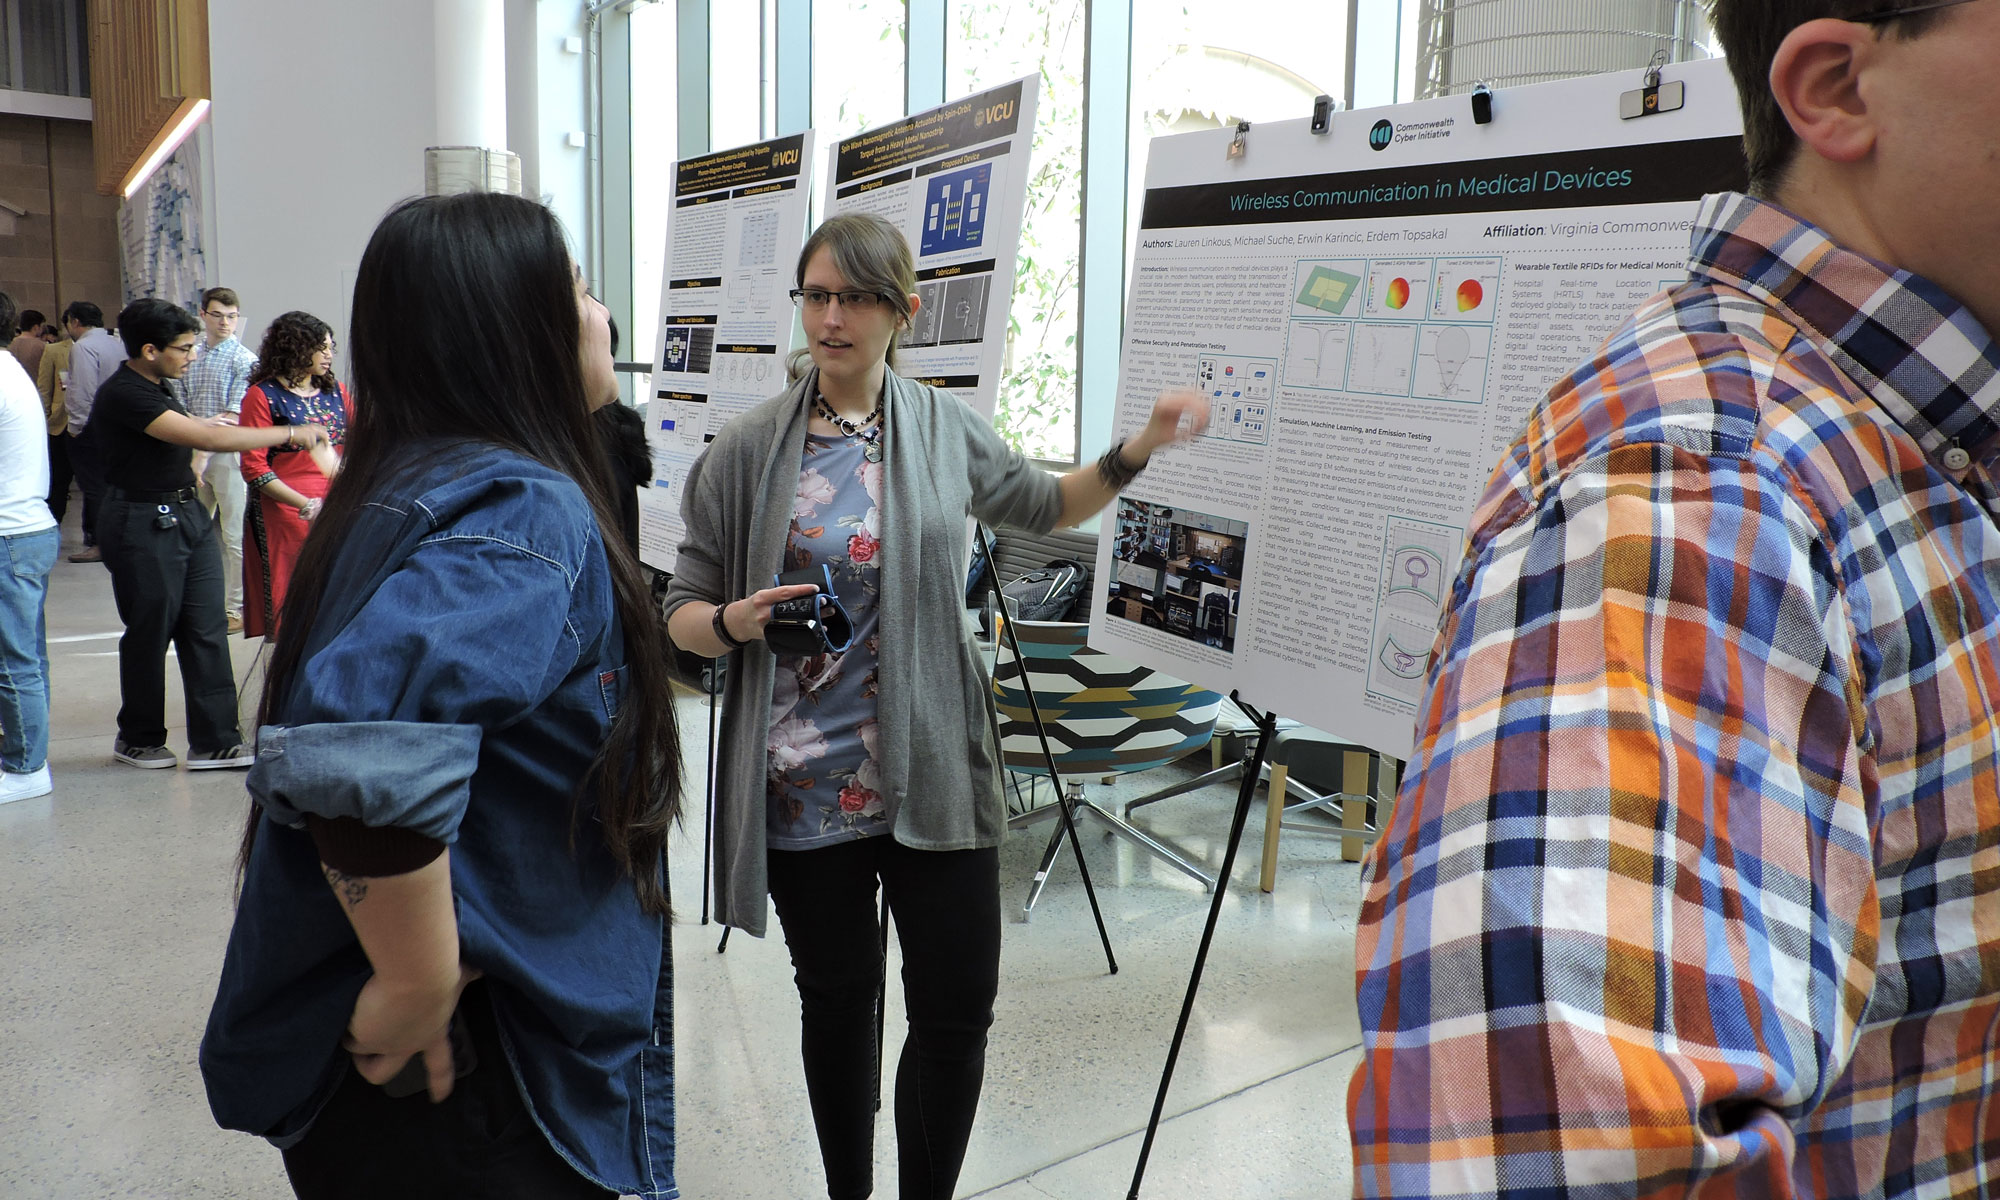 Lauren Linkous presenting her research poster